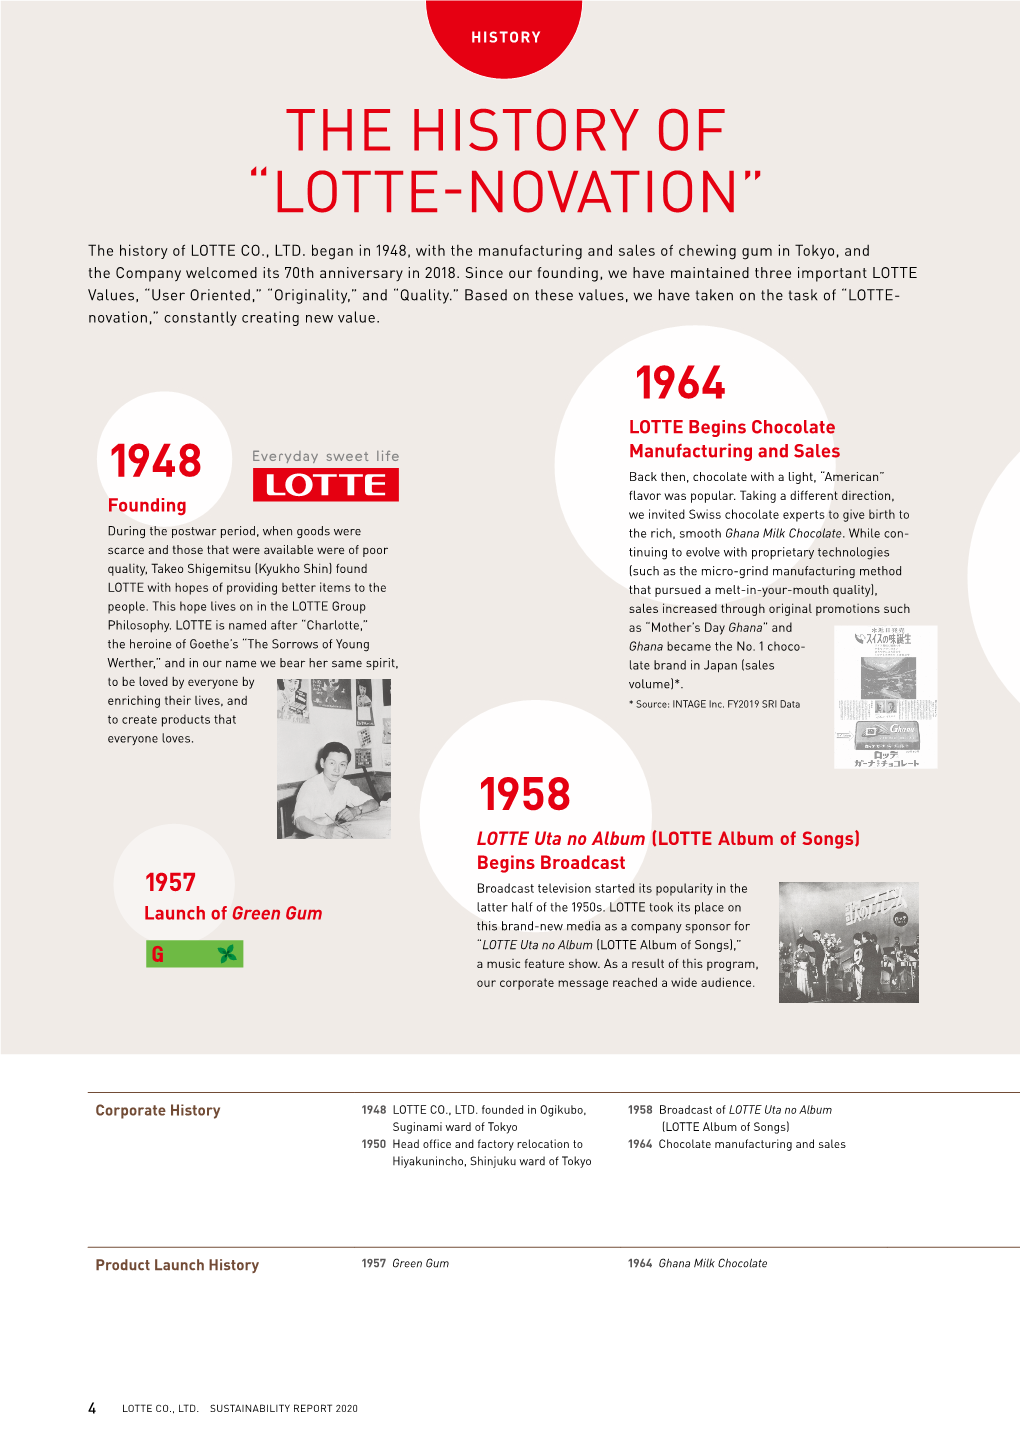 The History of “Lotte-Novation”